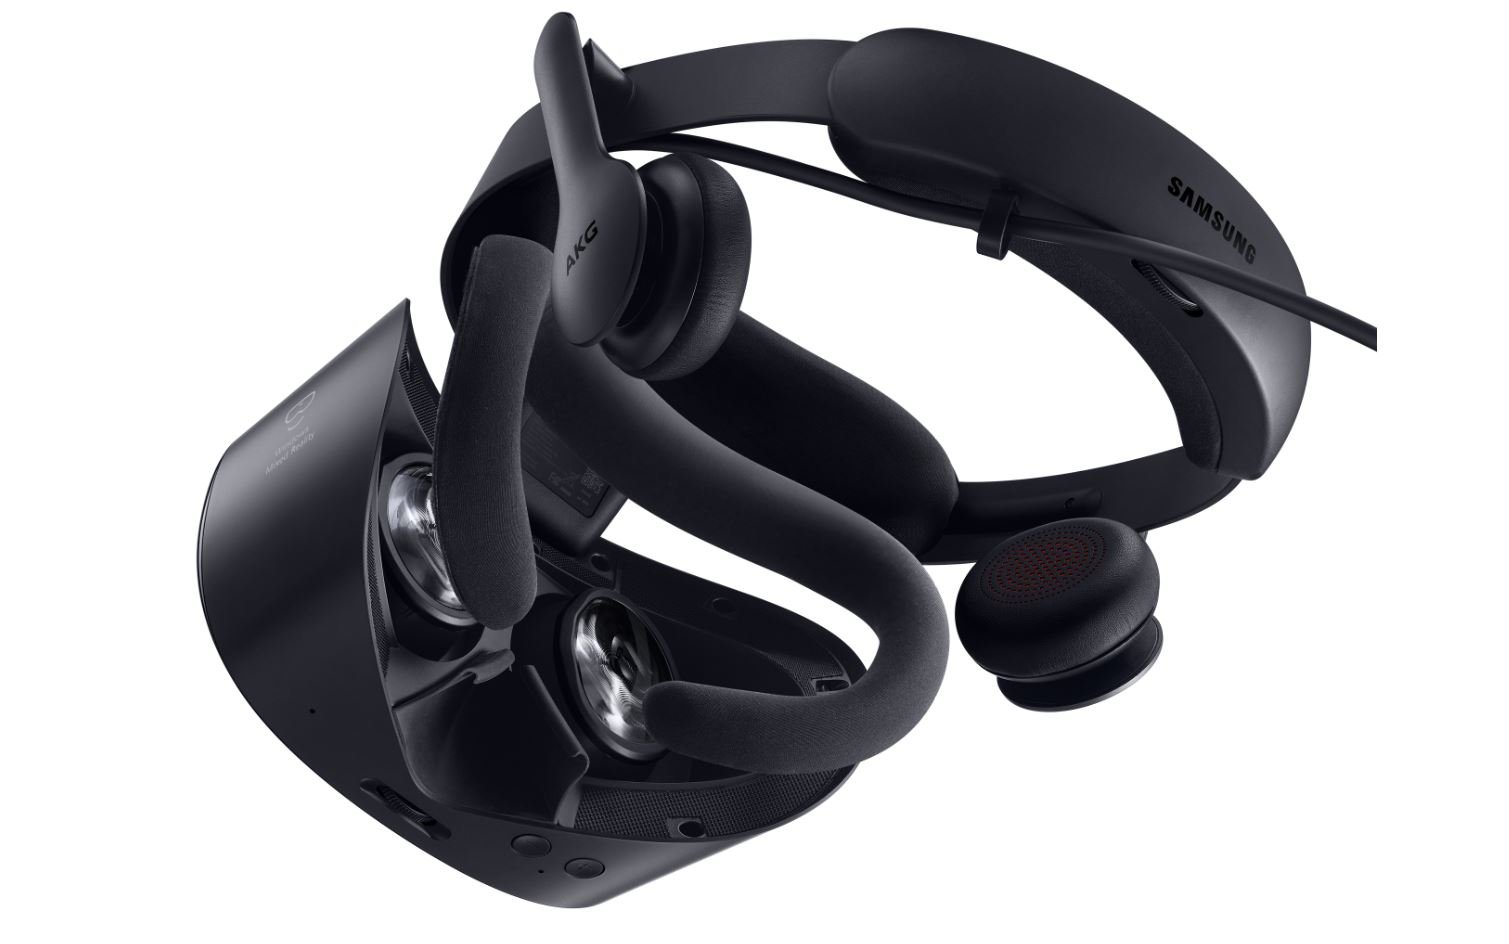 Upozornění na akci: Náhlavní souprava Samsung HMD Odyssey+ VR je nyní k dispozici za pouhých 229 $